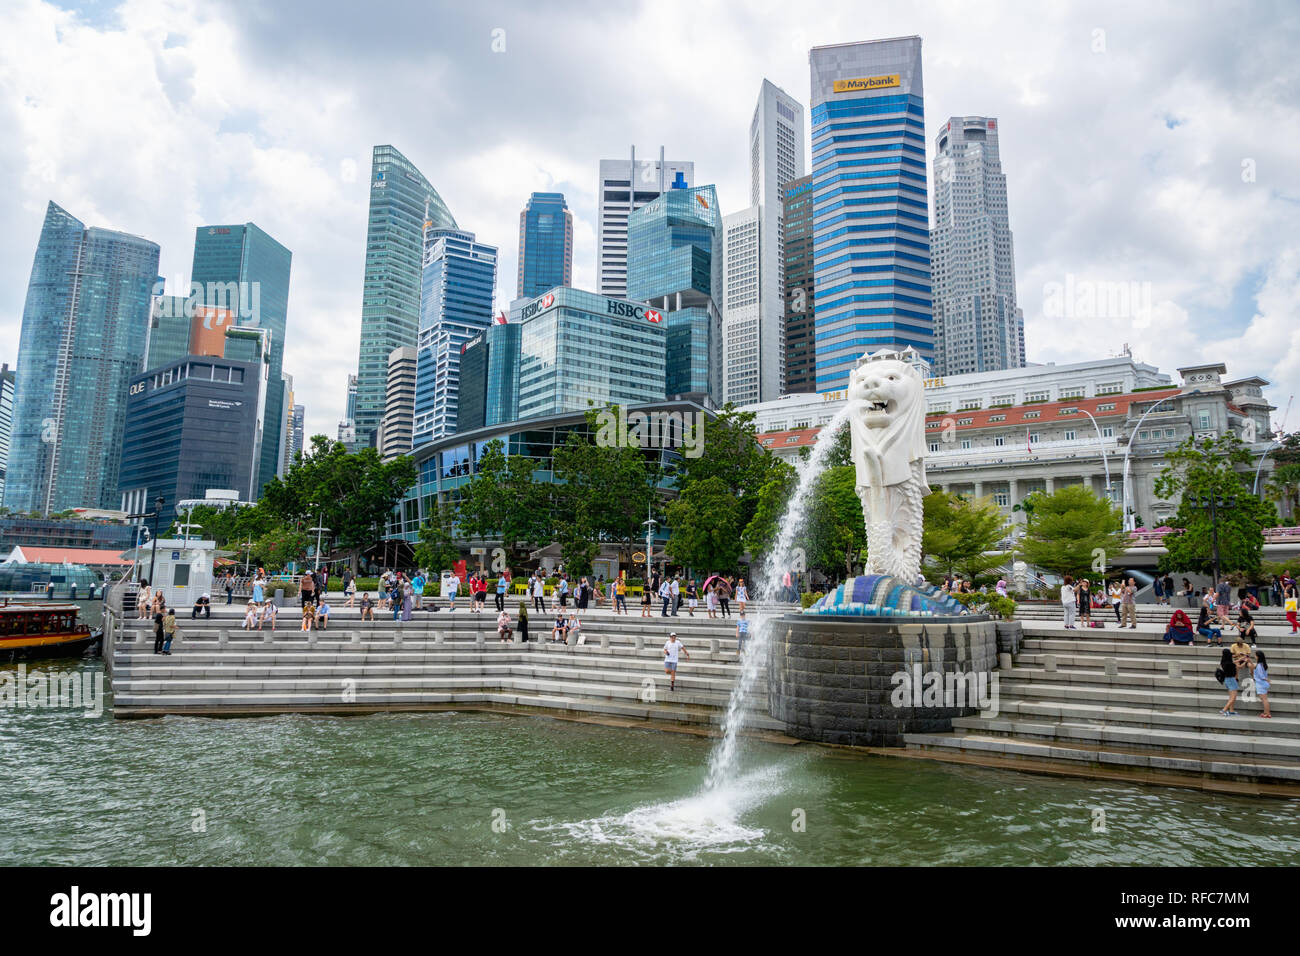 singapur-enero-2019-los-visitantes-al-merlion-park-en-el-centro-de-la-ciudad-de-singapur-es-un-lugar-famoso-merlion-en-singapur-y-popular-para-los-turistas-rfc7mm.jpg